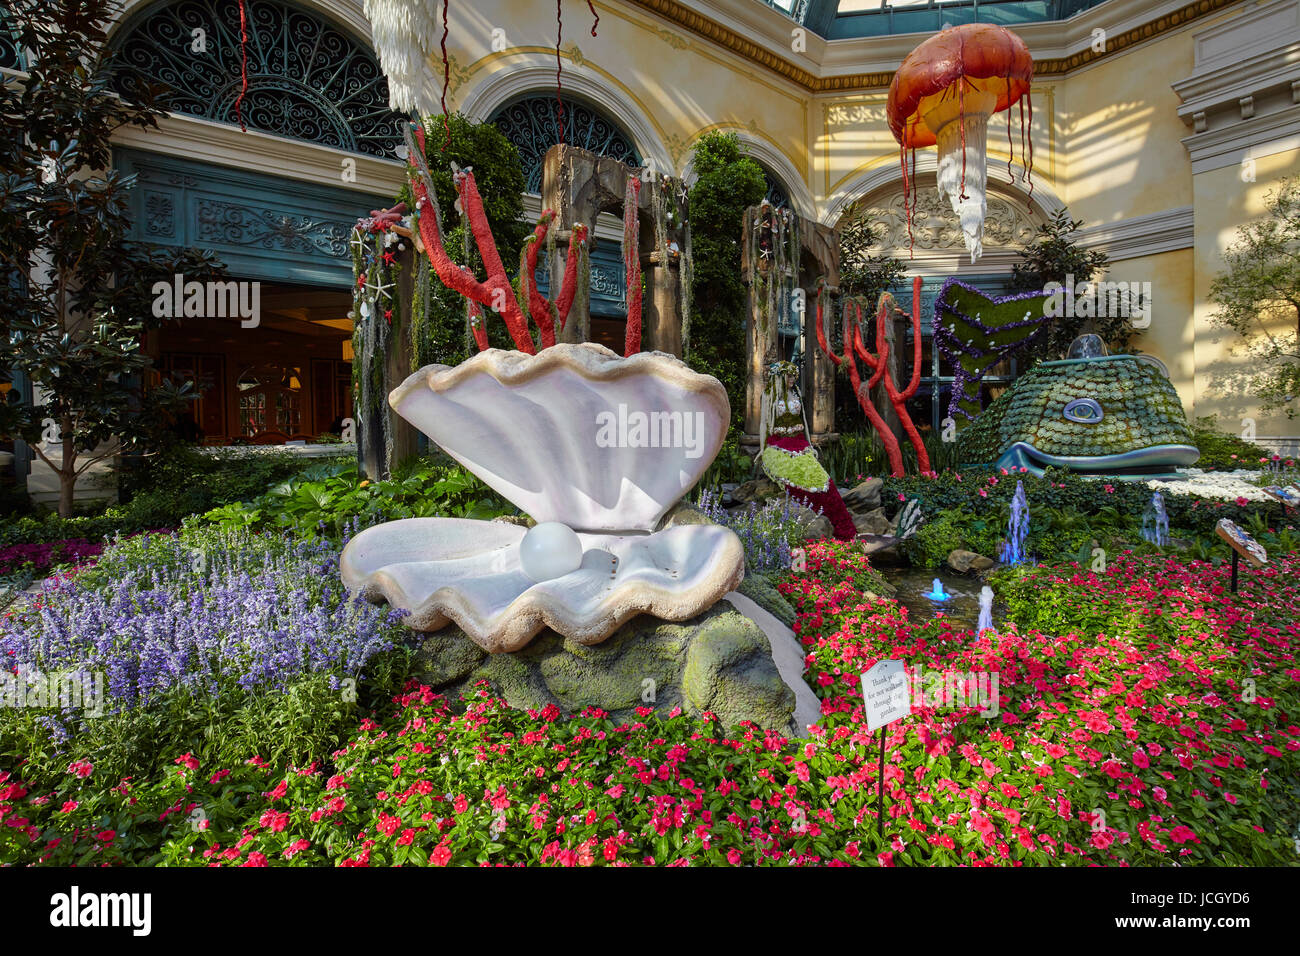 Botanische Gärten im Bellagio Hotel, Las Vegas, Nevada, Vereinigte Staaten von Amerika Stockfoto